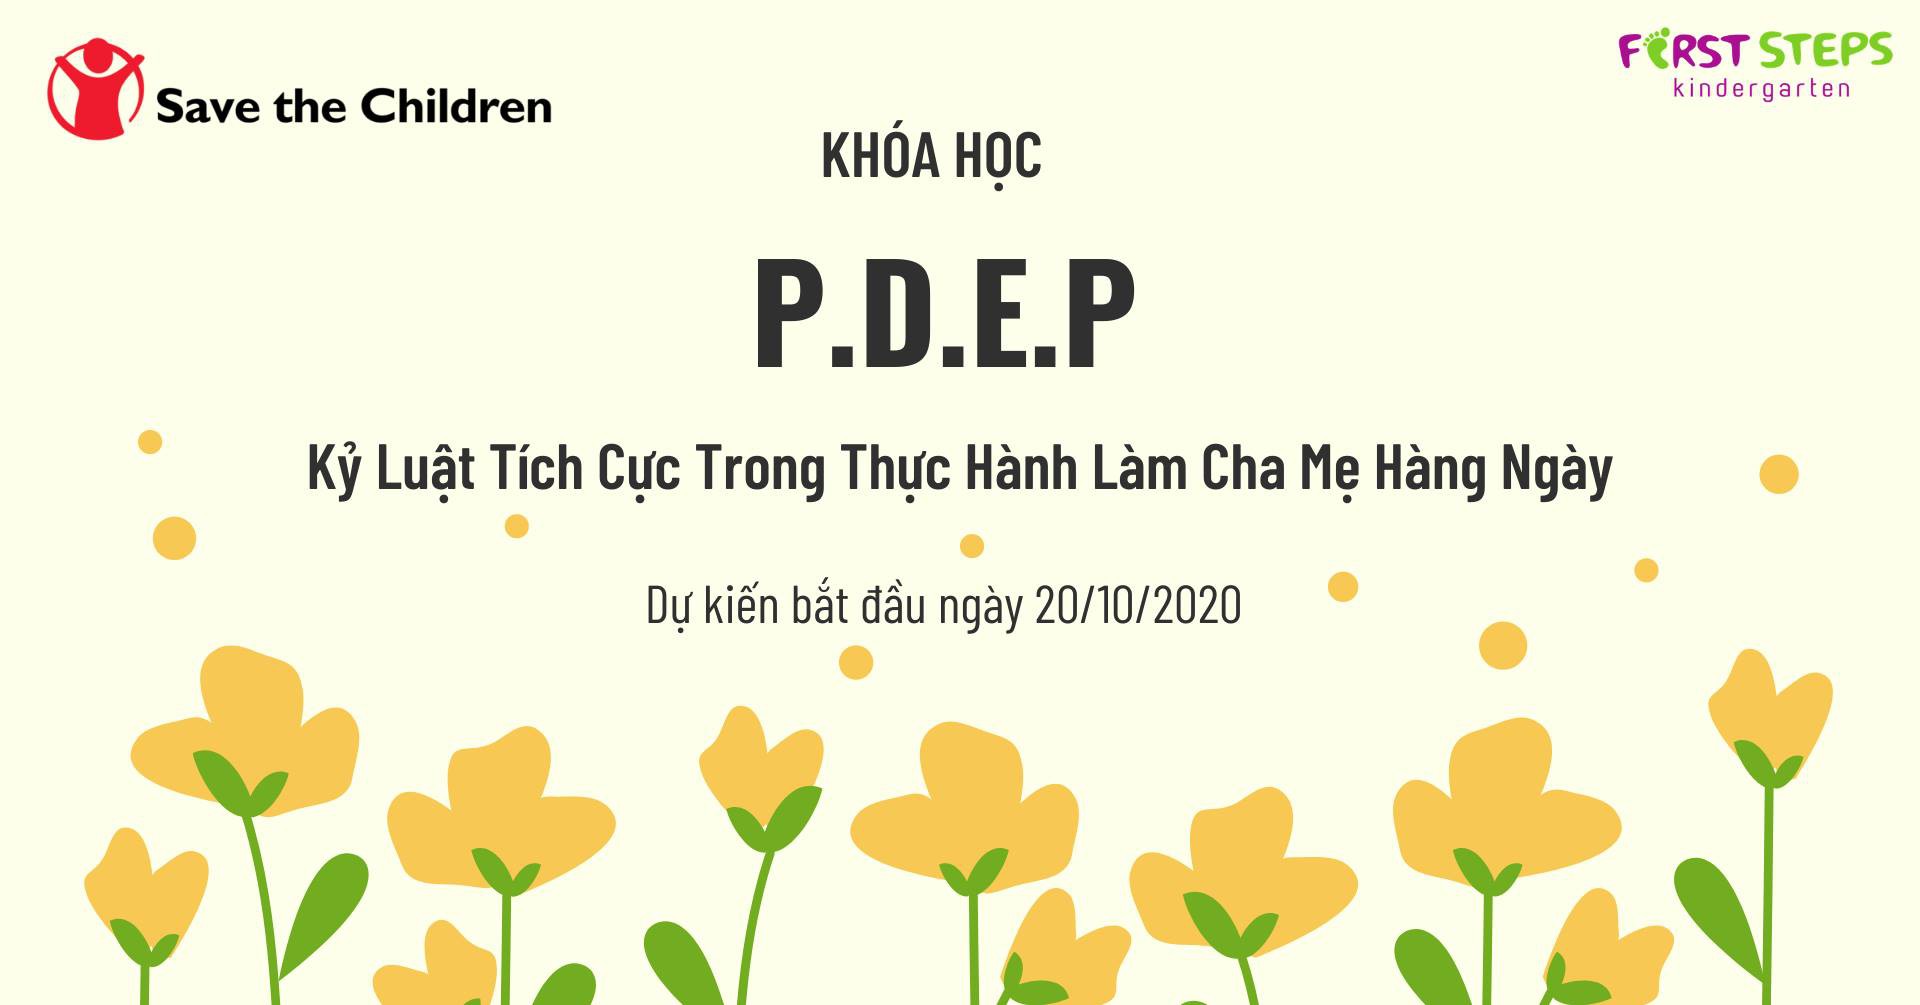 Khóa học PDEP - Kỷ luật tích cực trong thực hành làm cha mẹ hàng ngày